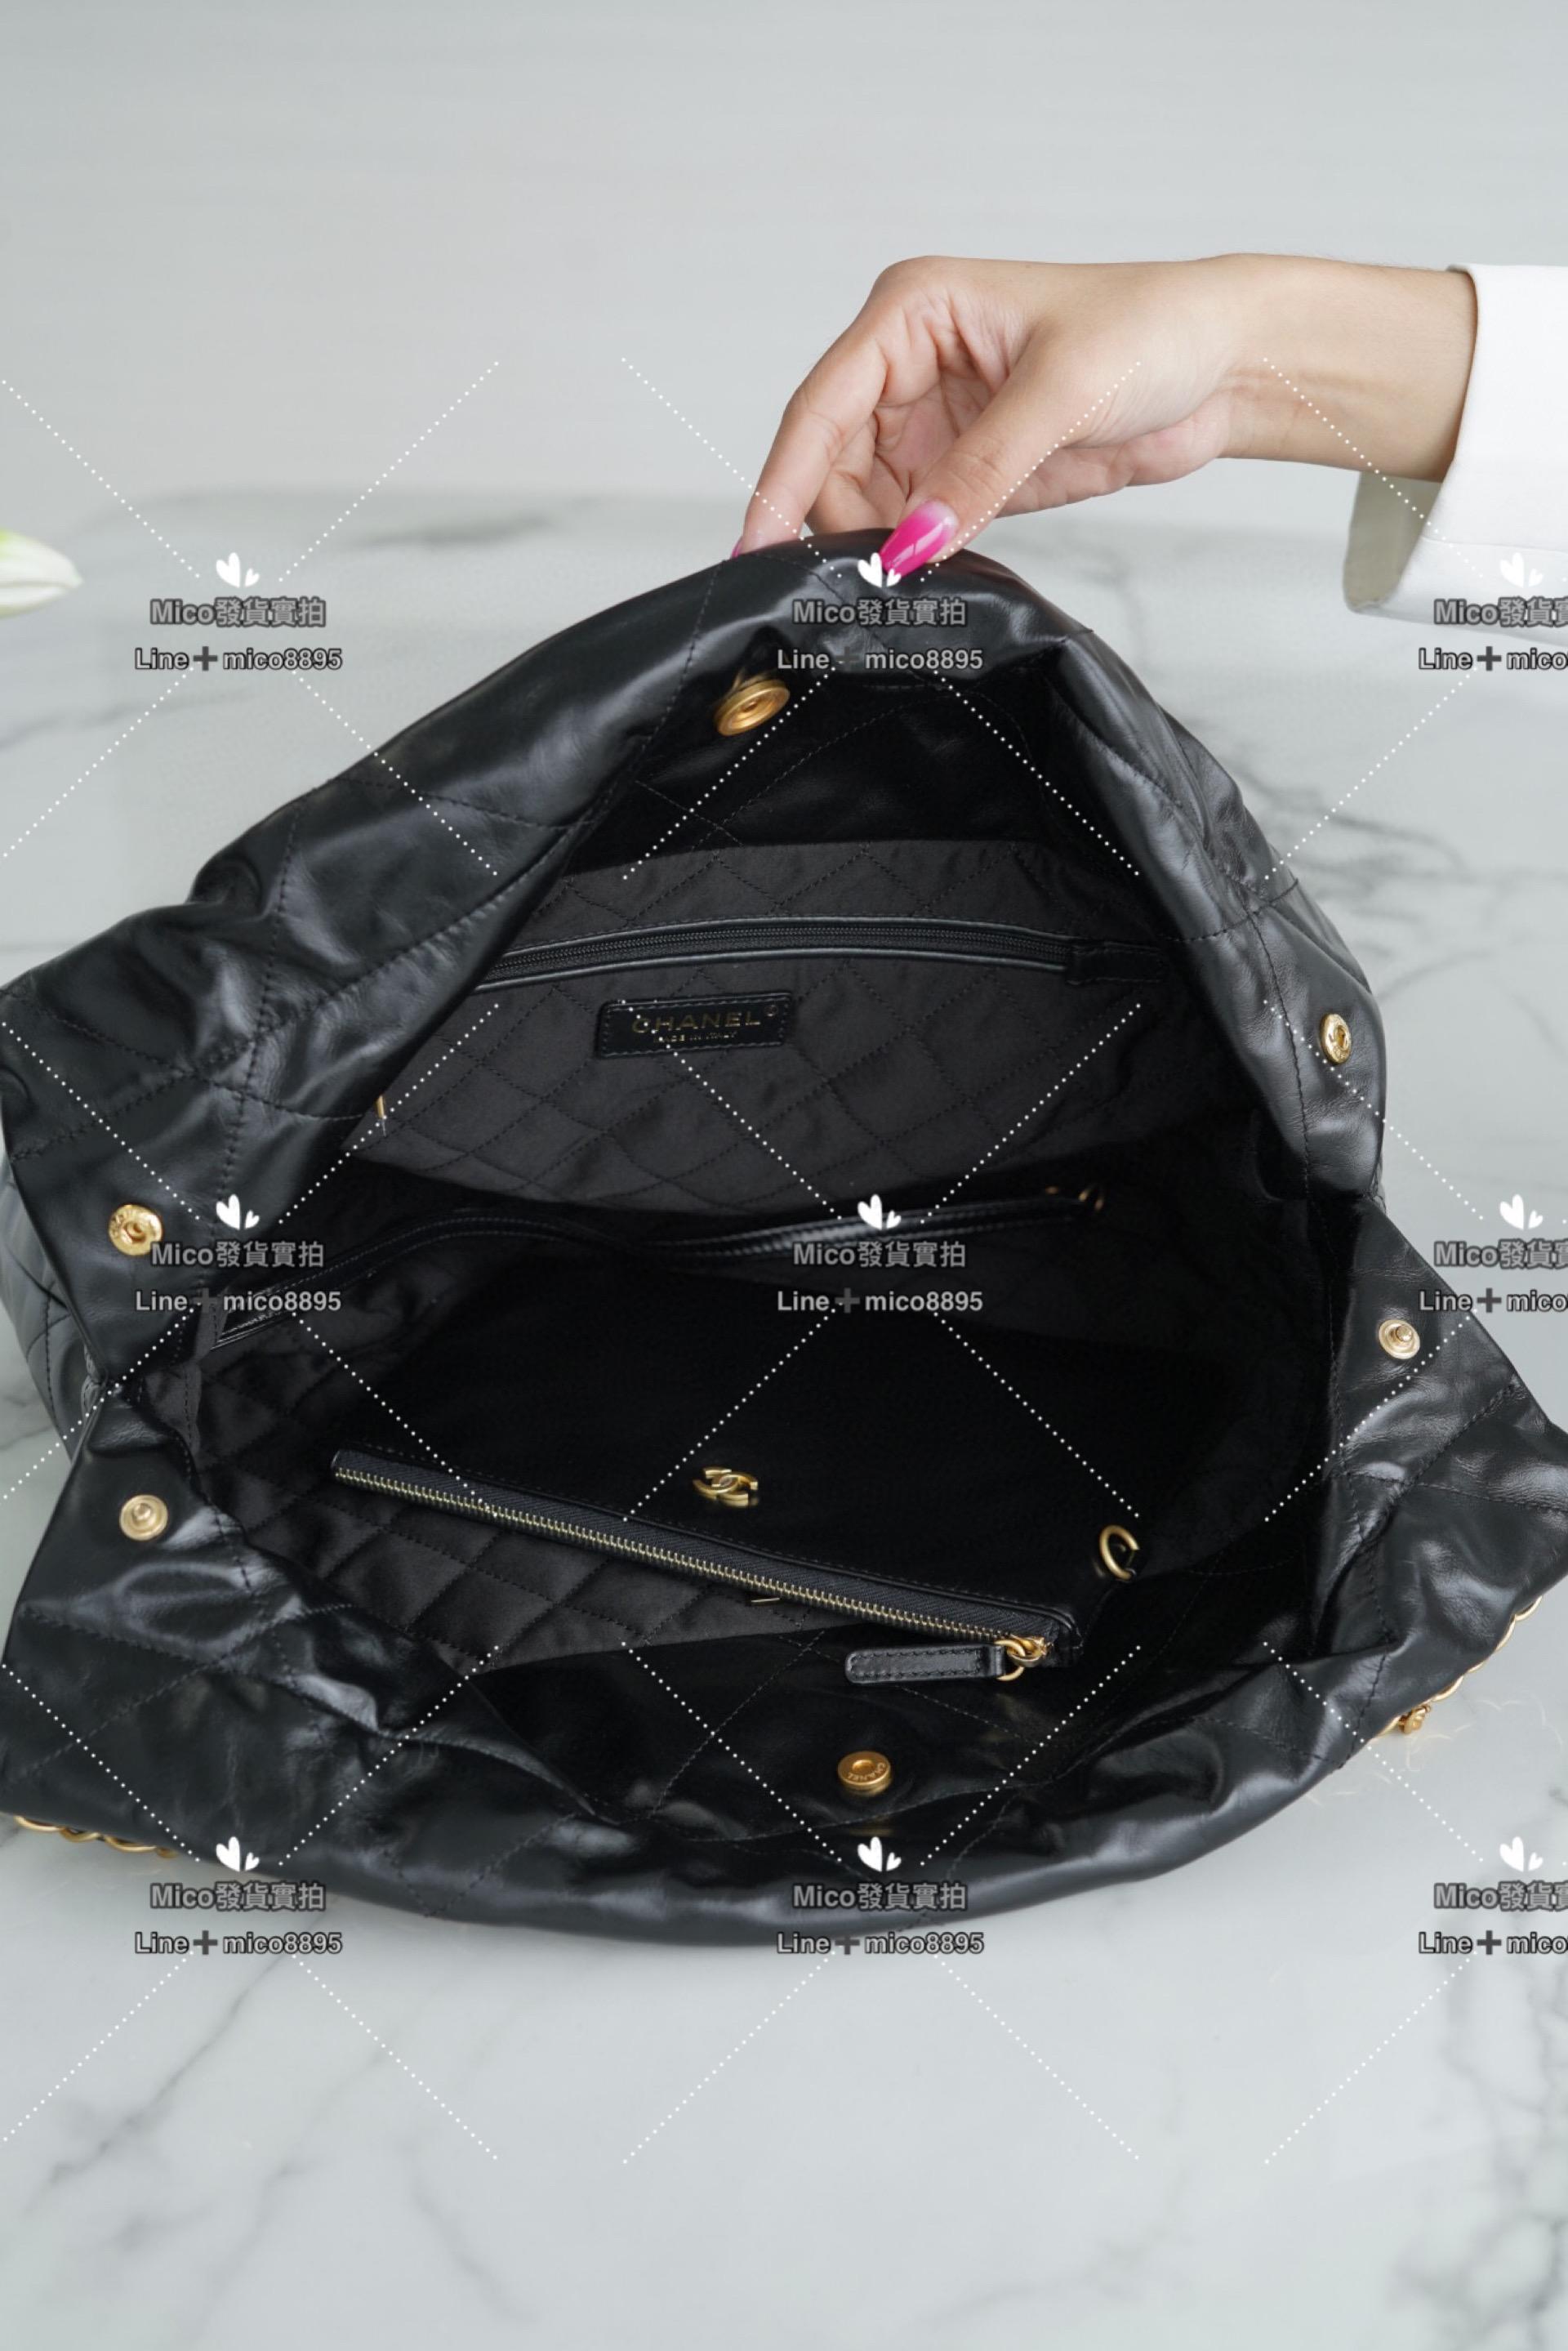 Chanel 最新爆款 22系列手袋 購物袋 牛皮 黑金 中號 尺寸 39*42cm